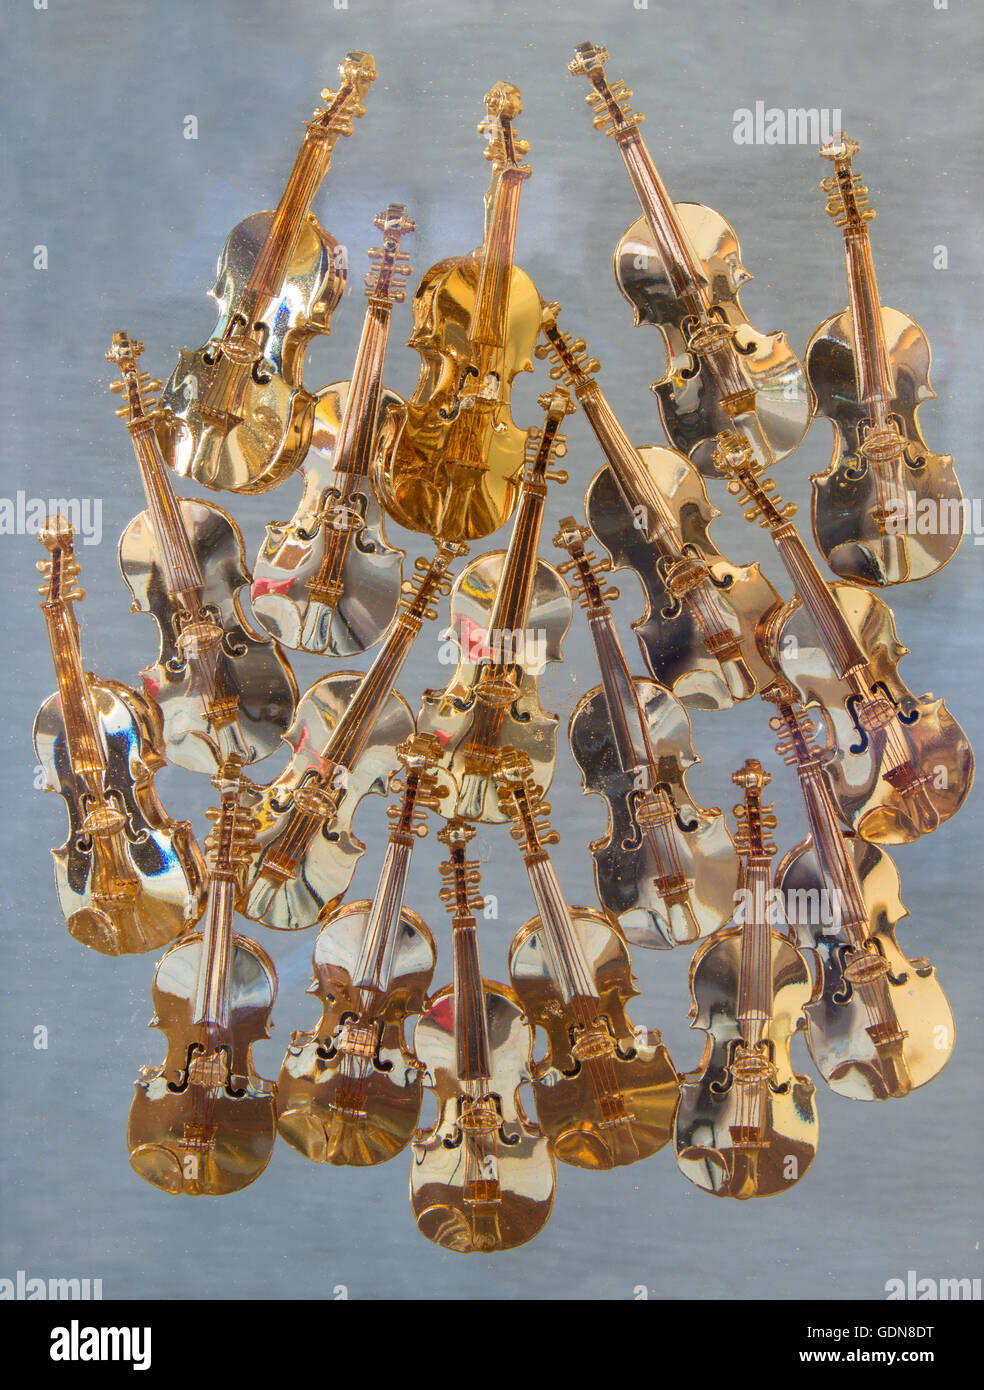 CREMONA, Italia - 24 Maggio 2016: il dettaglio di poco scultura moderna dei violini. Foto Stock